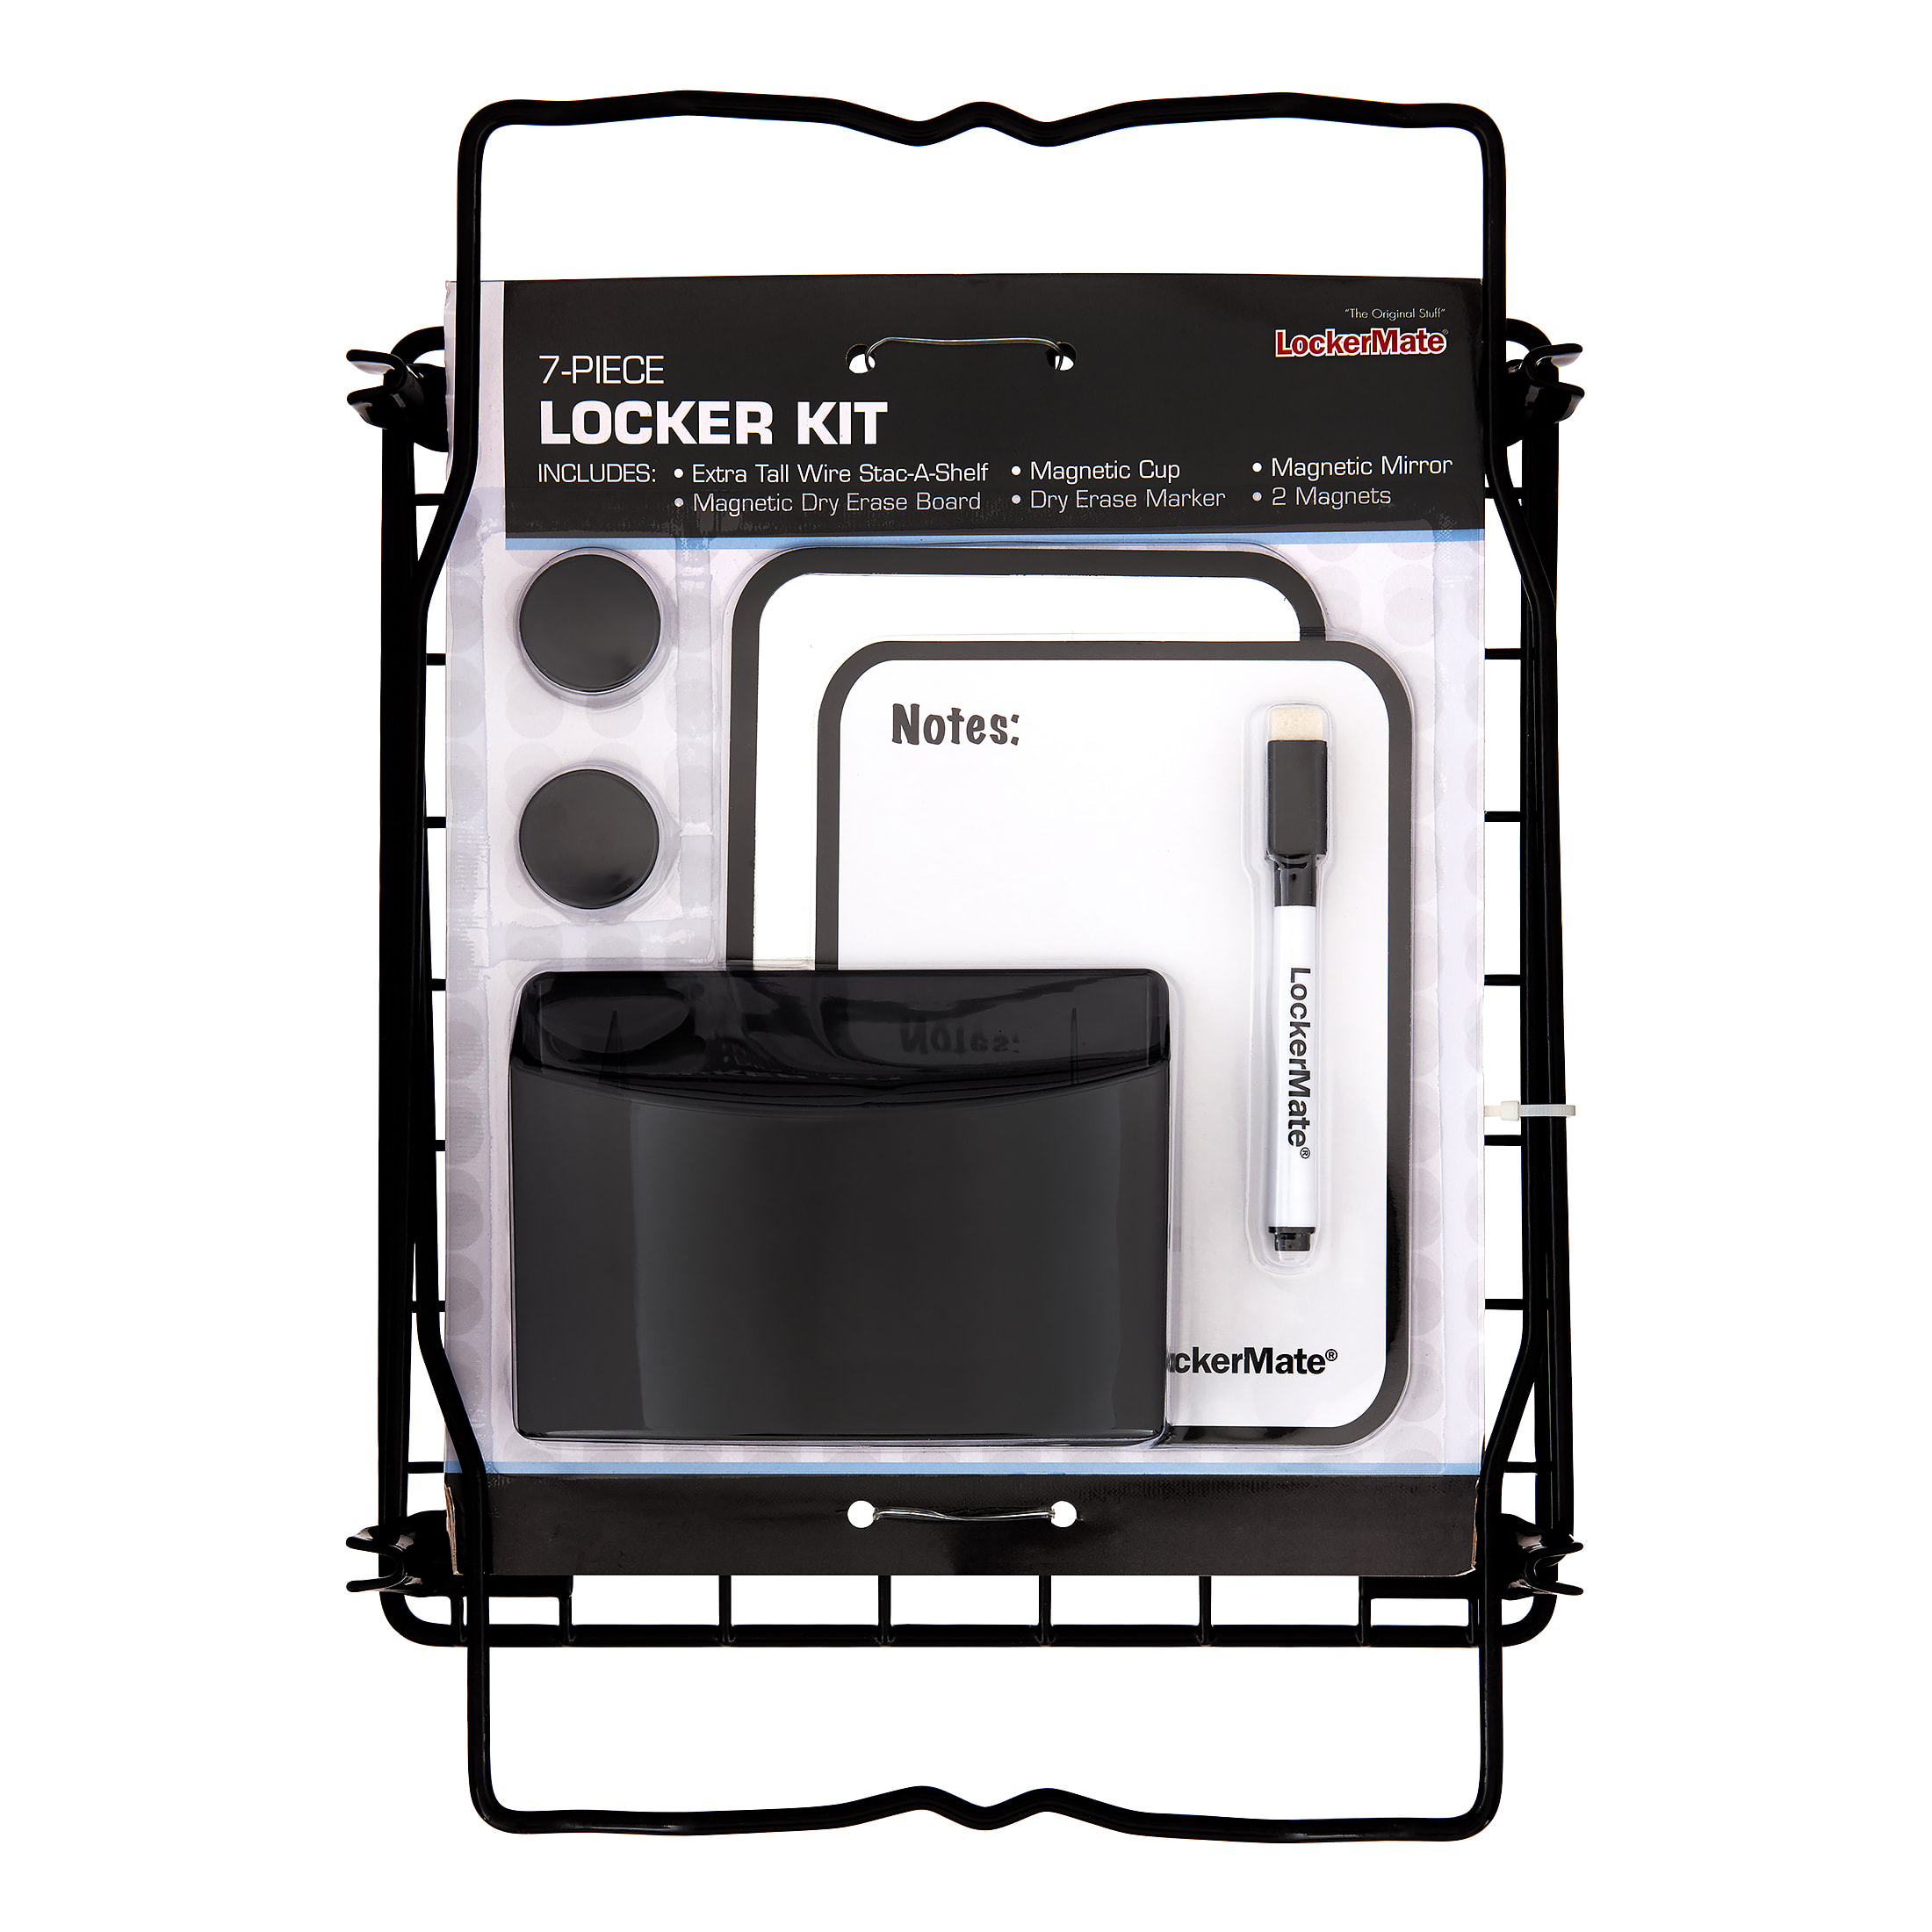 Lockermate 7 Piece Tall Wire Locker Kit with Magnets Black Dry Erase Marker School Supplies Storage Cup Mirror Dry Erase Board